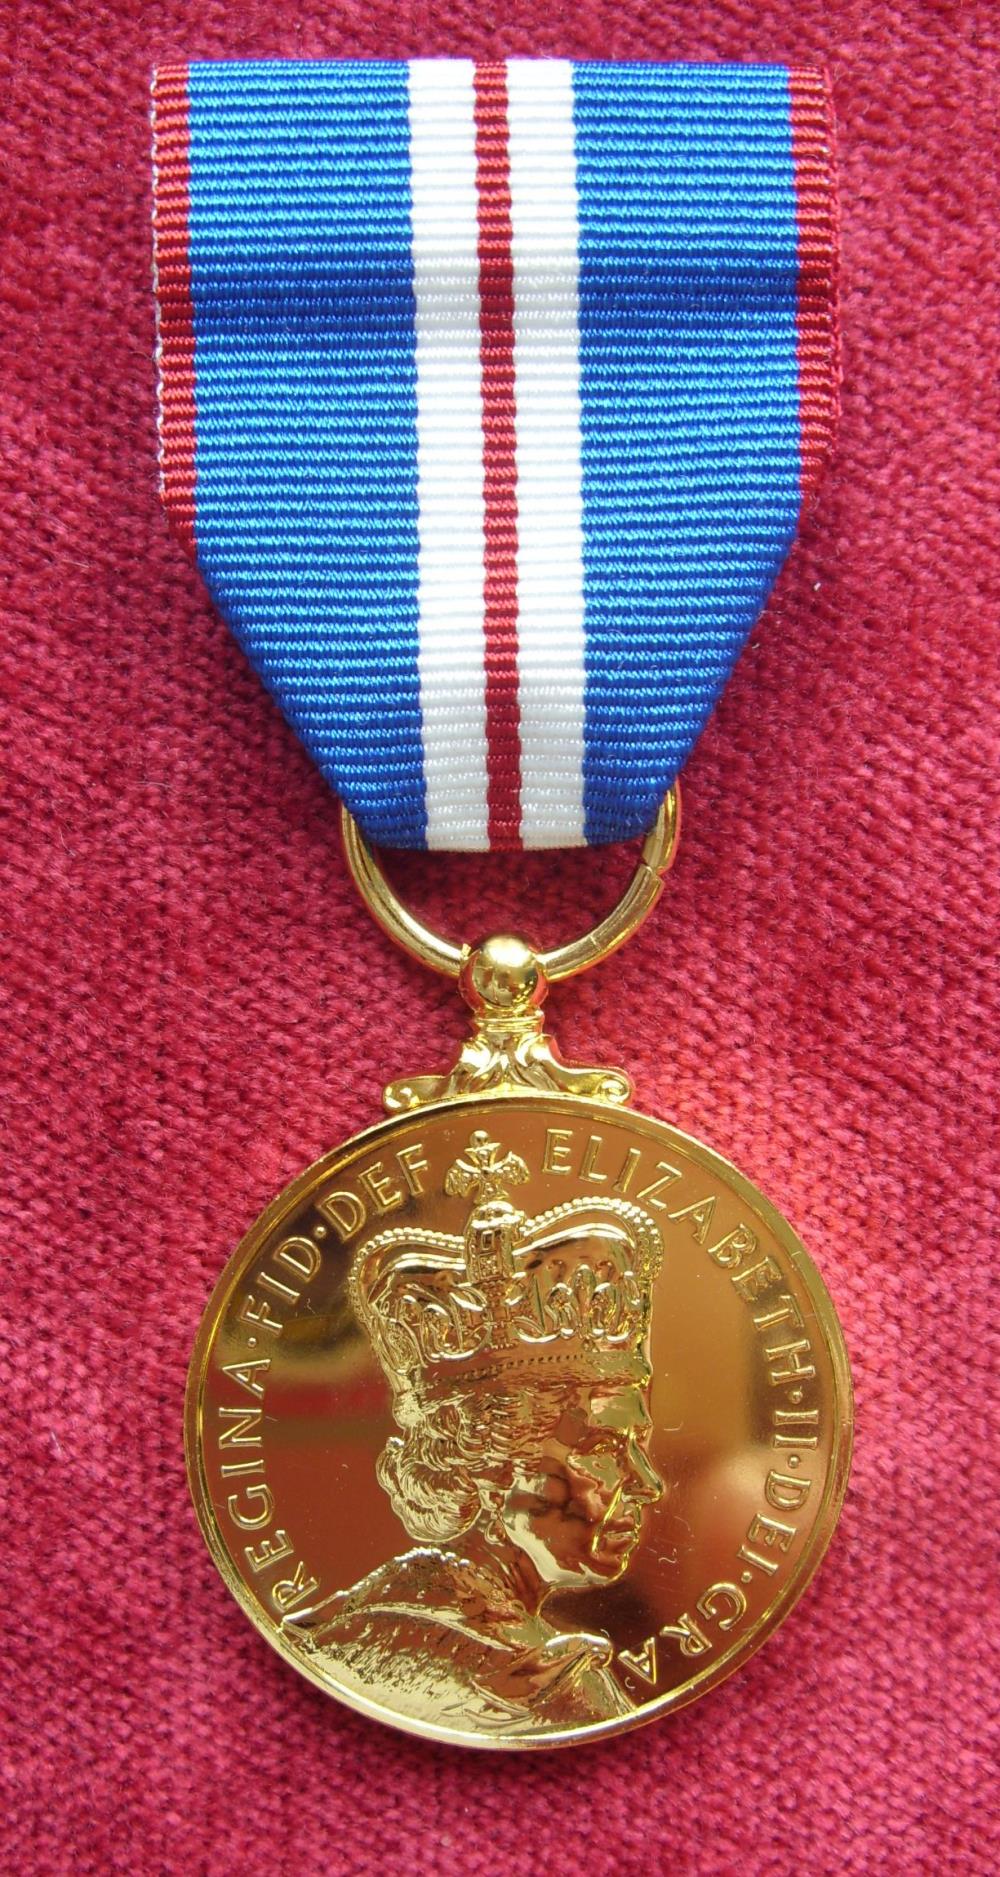 Worcestershire Medal Service: 2002 Golden Jubilee Medal - Original